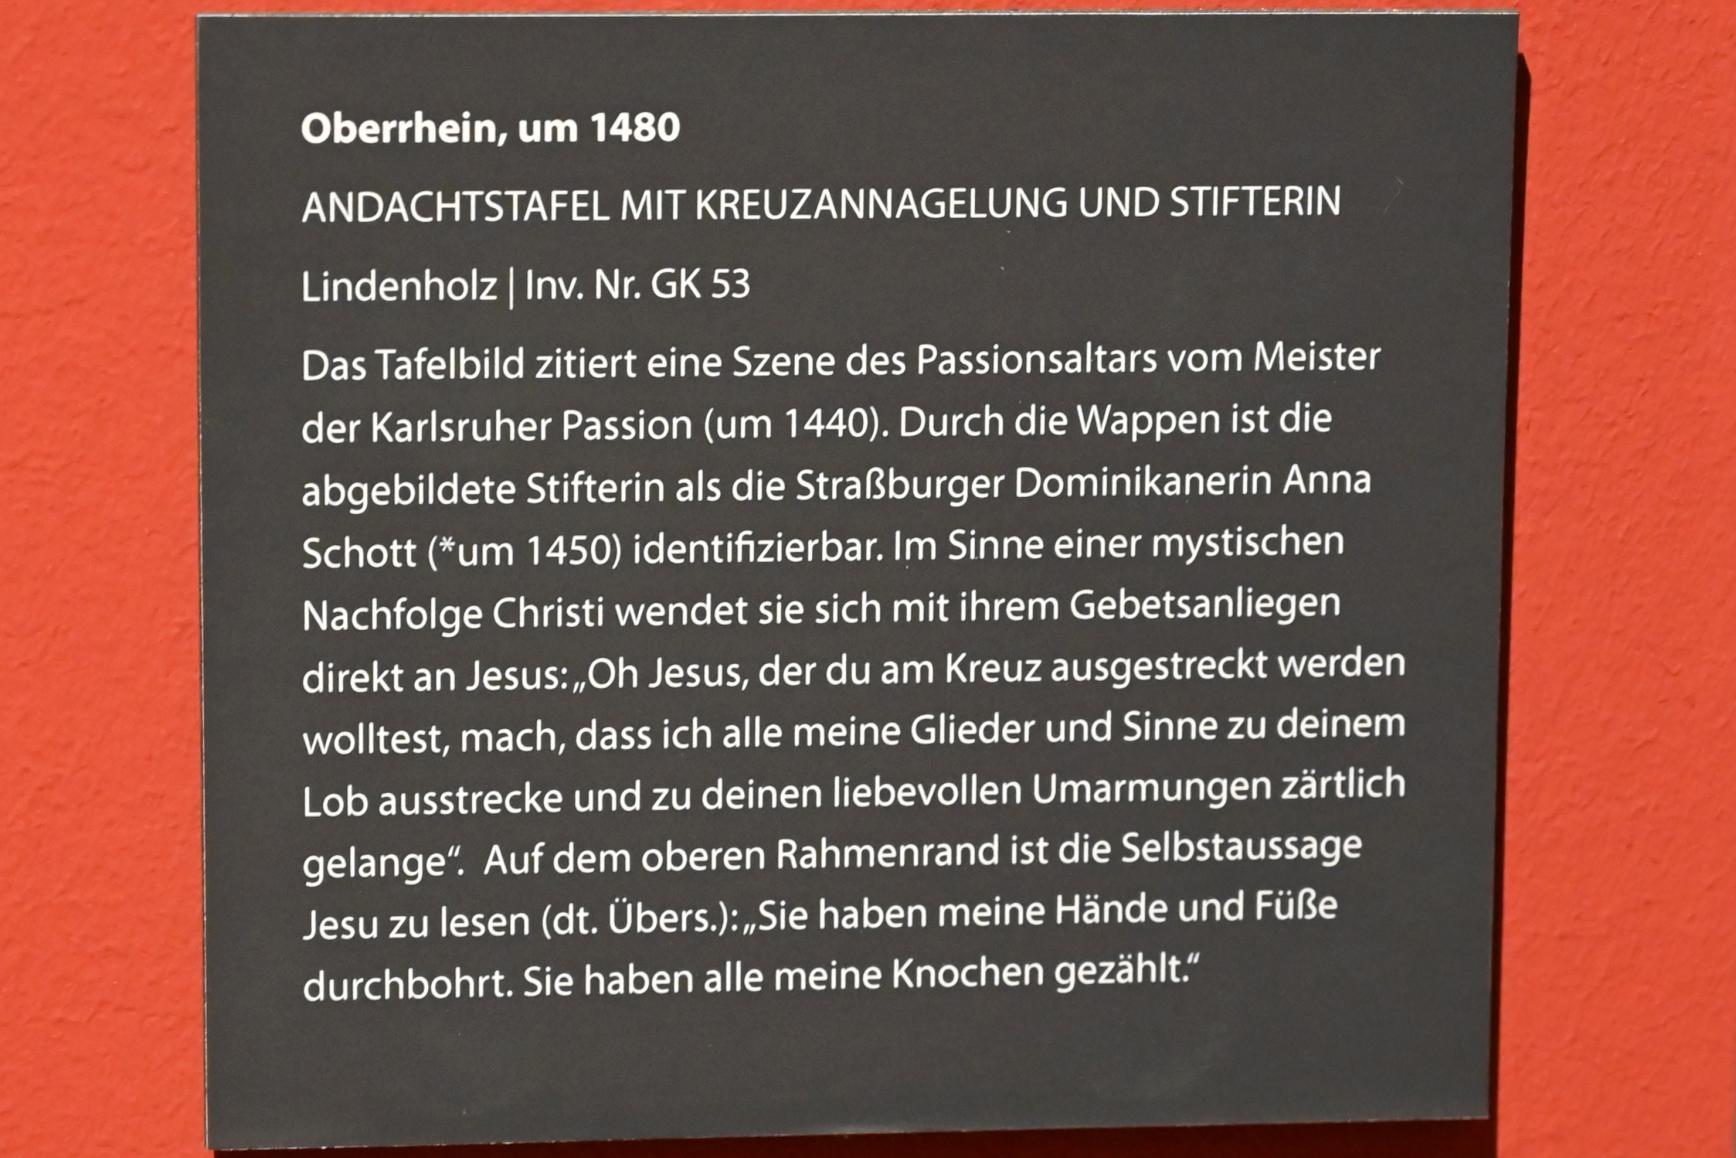 Andachtstafel mit Kreuzannagelung und Stifterin, Darmstadt, Hessisches Landesmuseum, Saal 4, um 1480, Bild 2/2